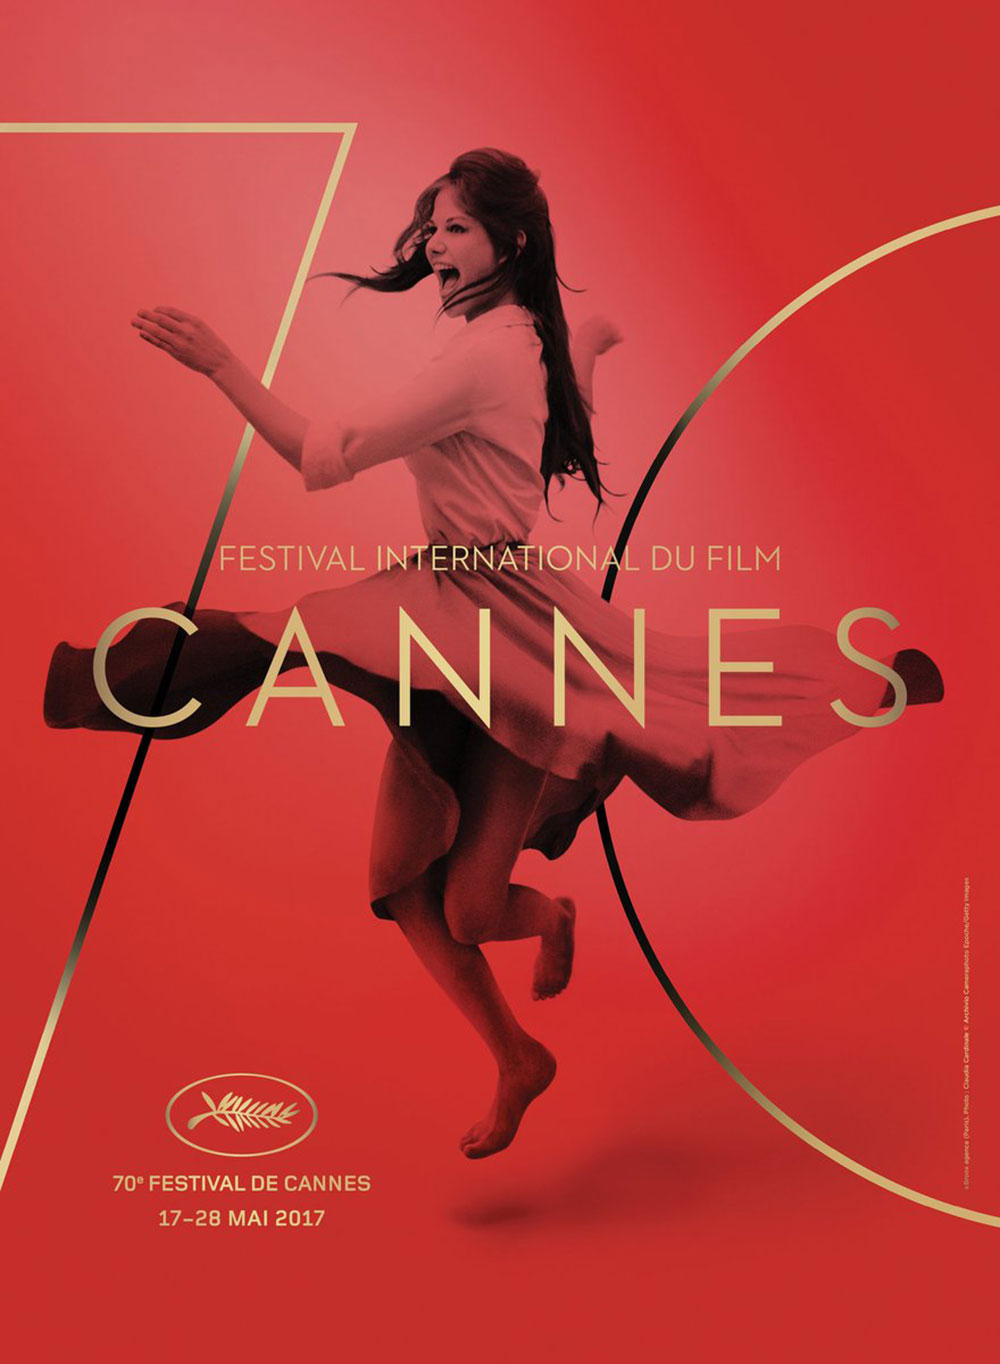 Destaque: "Pôster de divulgação do Festival de Cannes 2017"